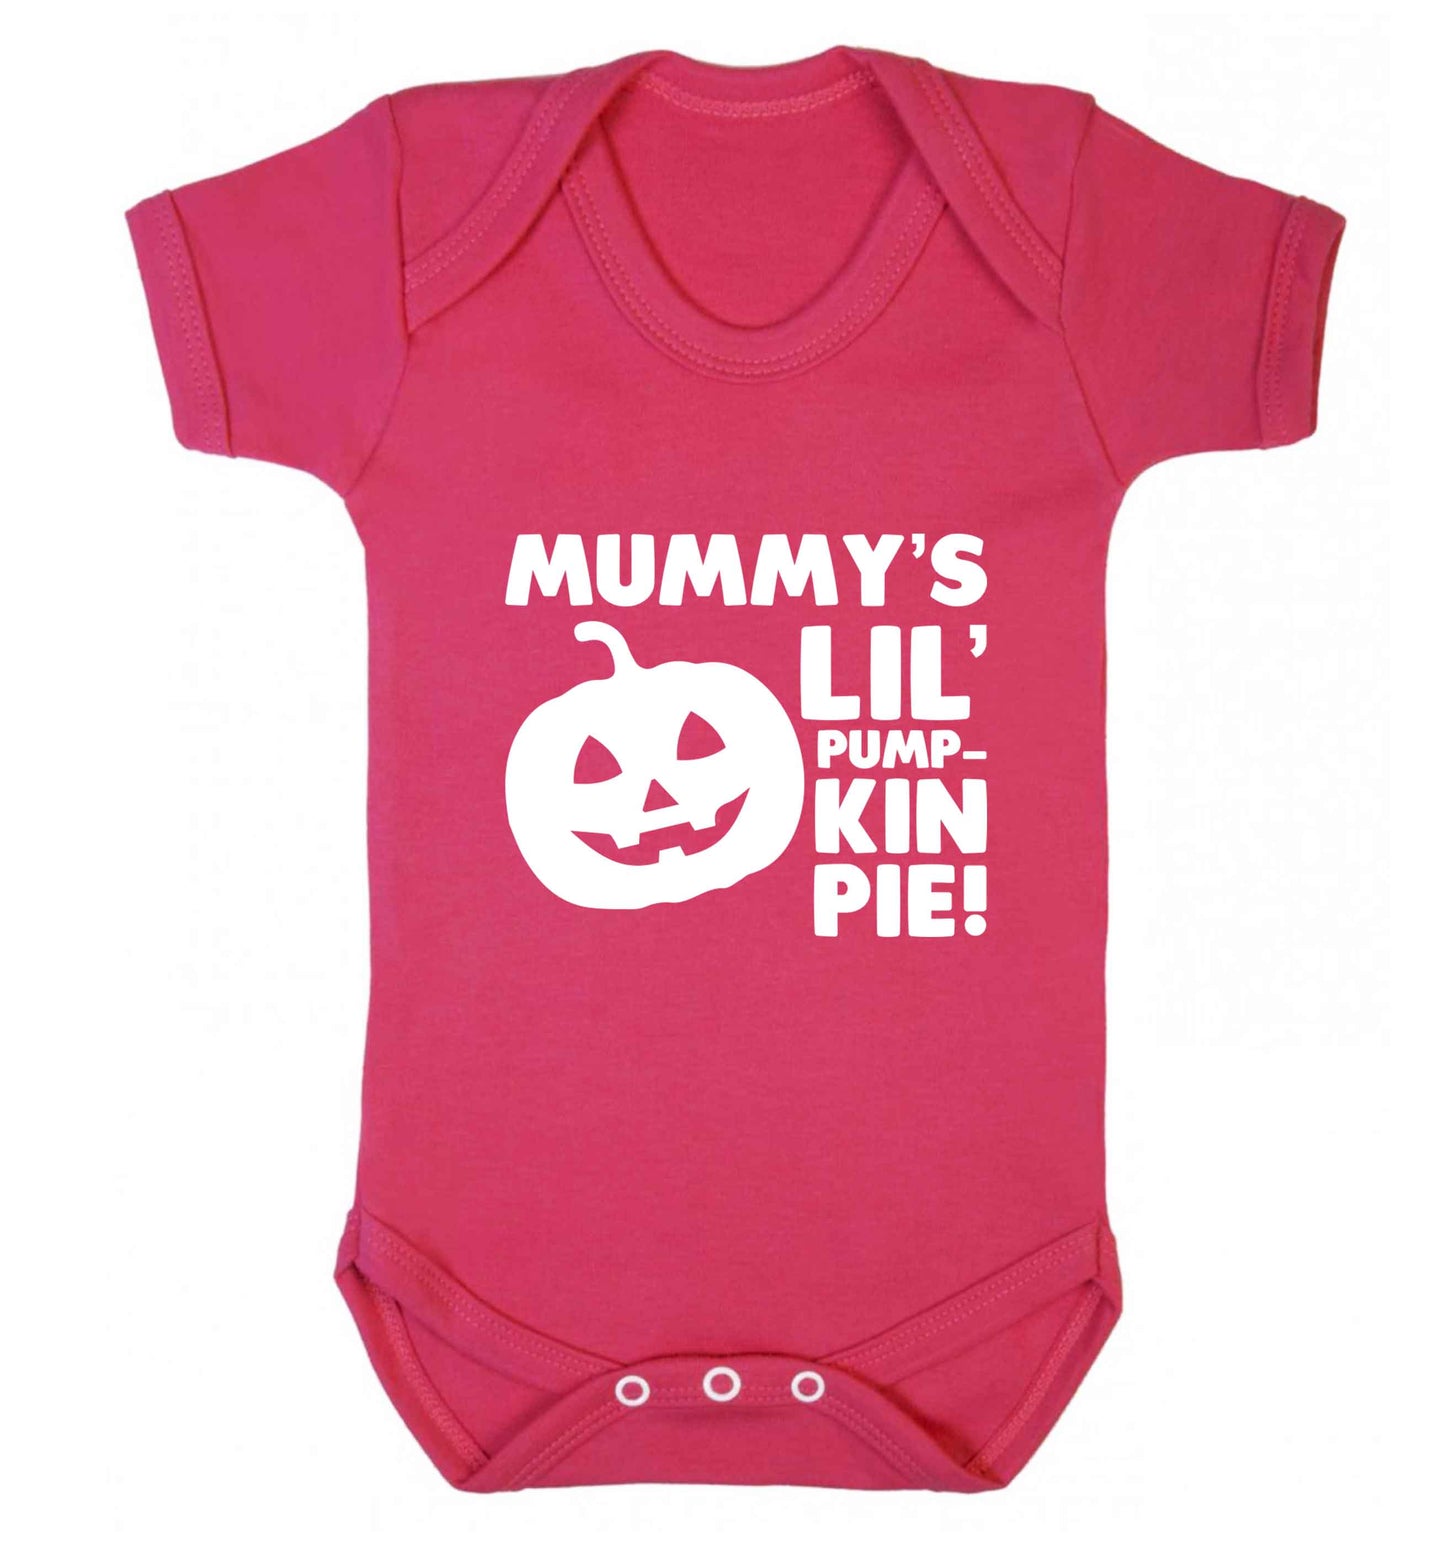 Mummy's lil' pumpkin pie baby vest dark pink 18-24 months